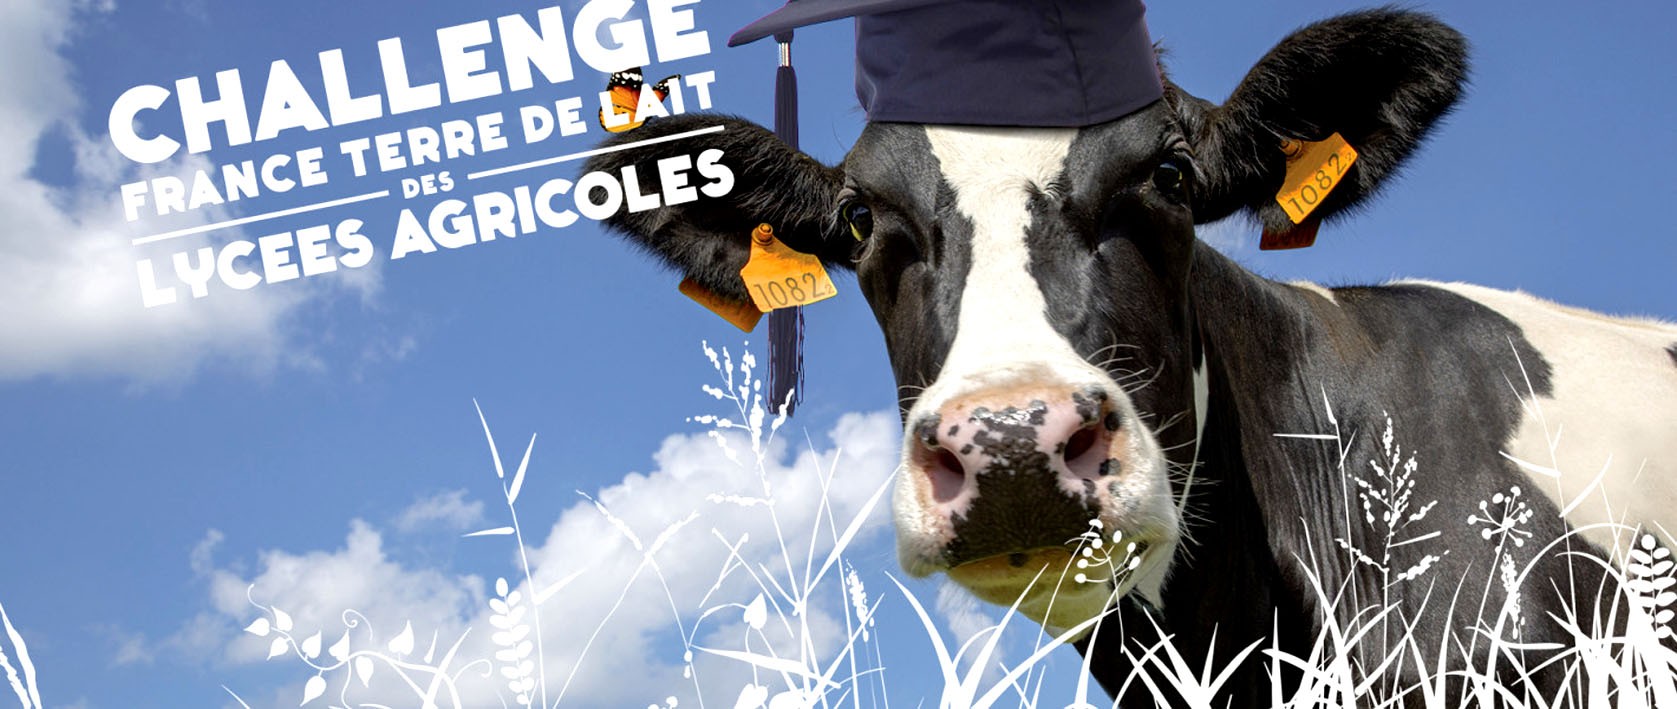 Challenge France terre de lait